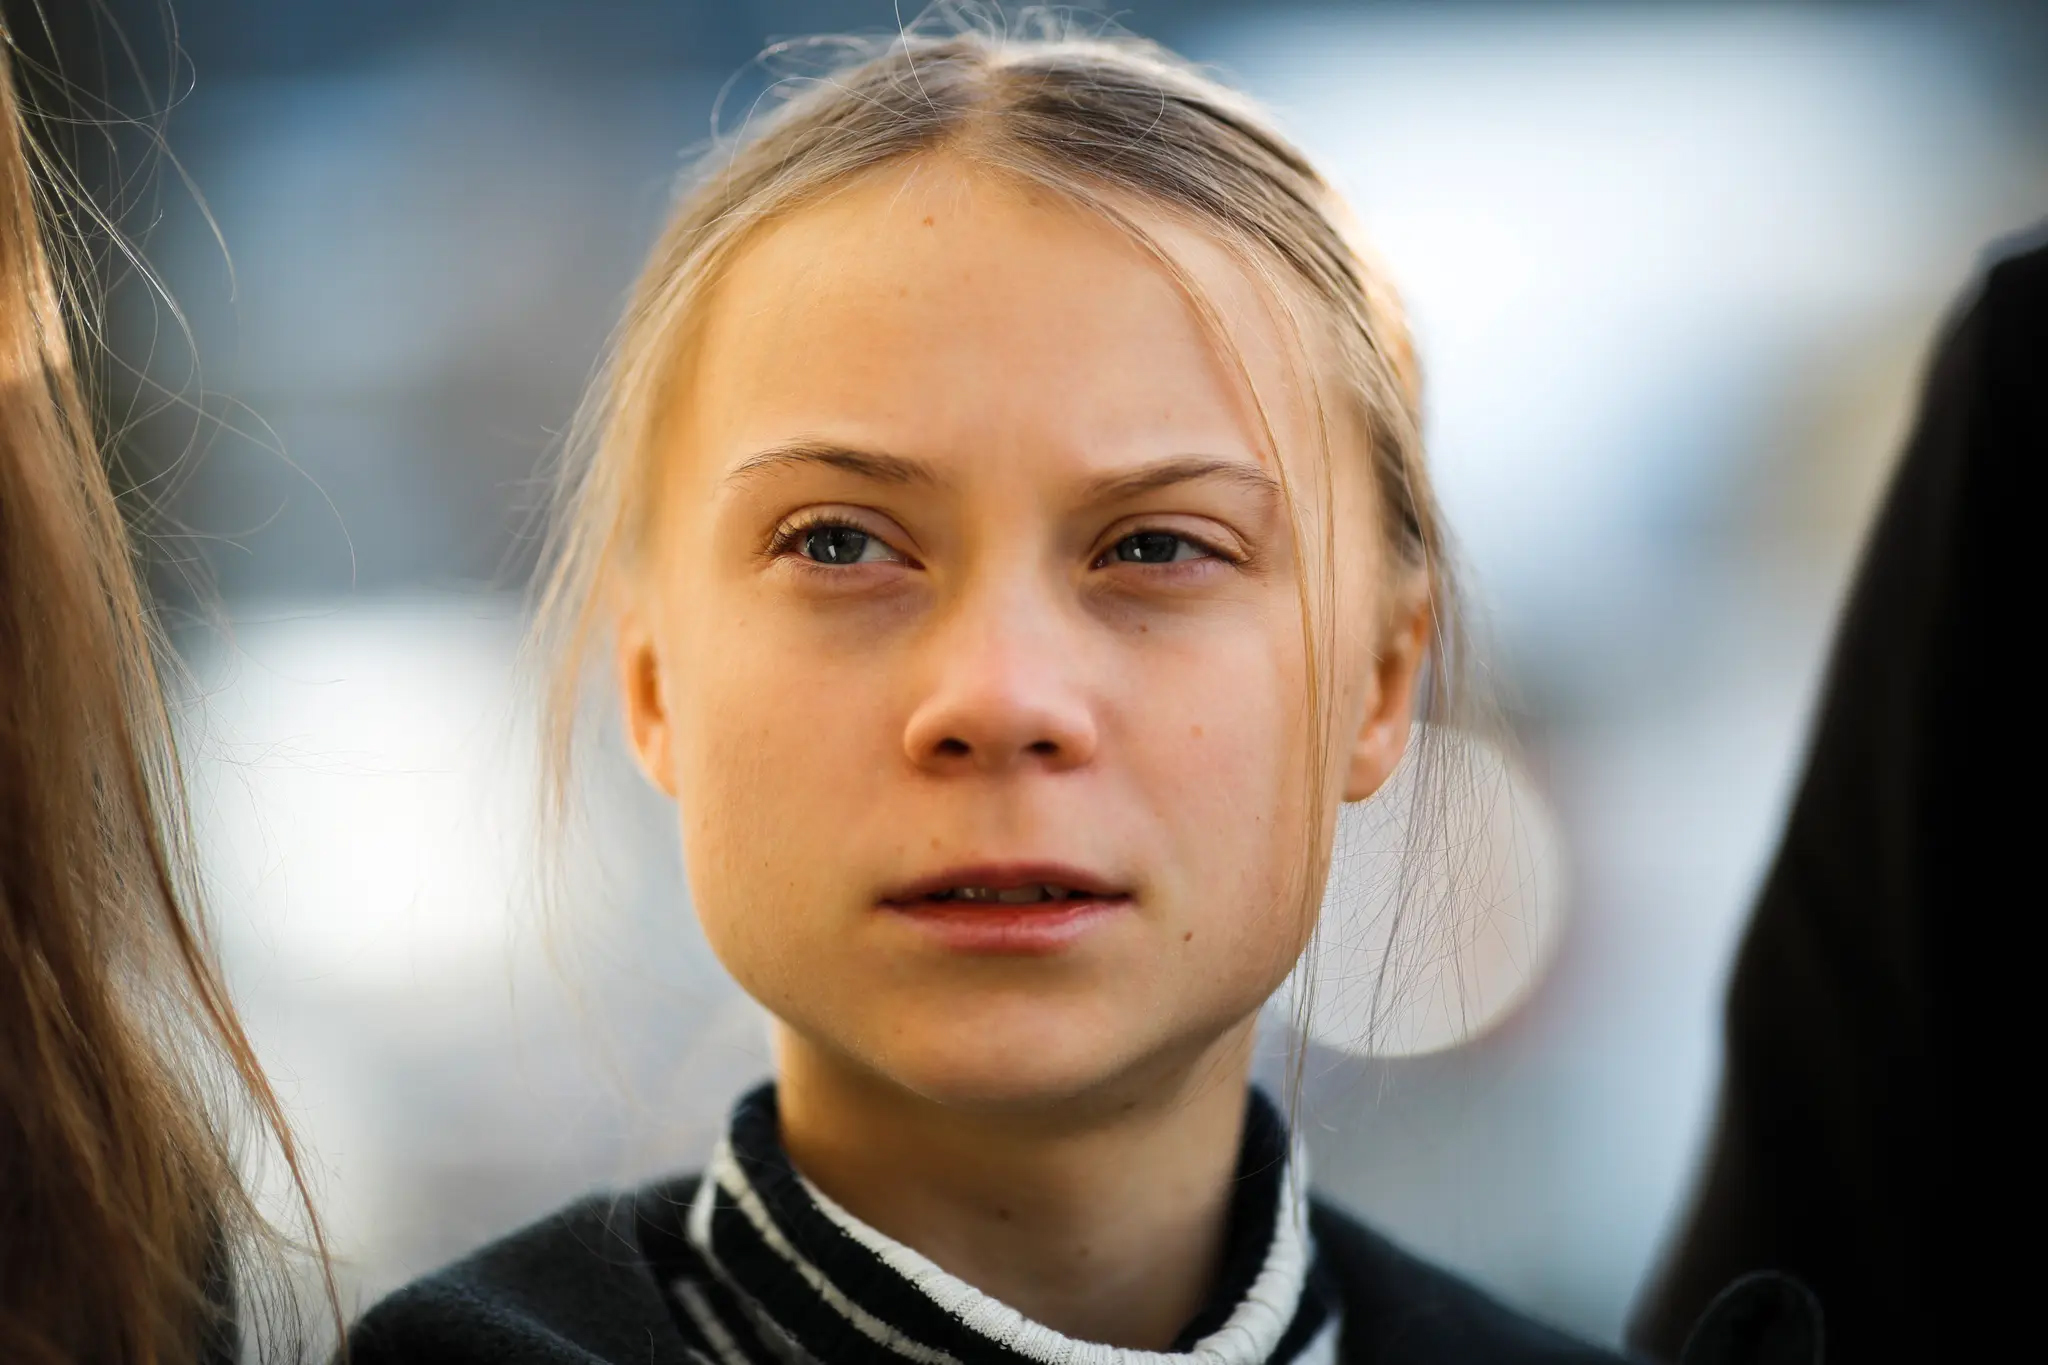 Greta Thunberg kommer til Oslo sammen med aksjonister fra klimabevegelsen Fridays for Future, melder NRK. (Foto: AP/NTB scanpix.)